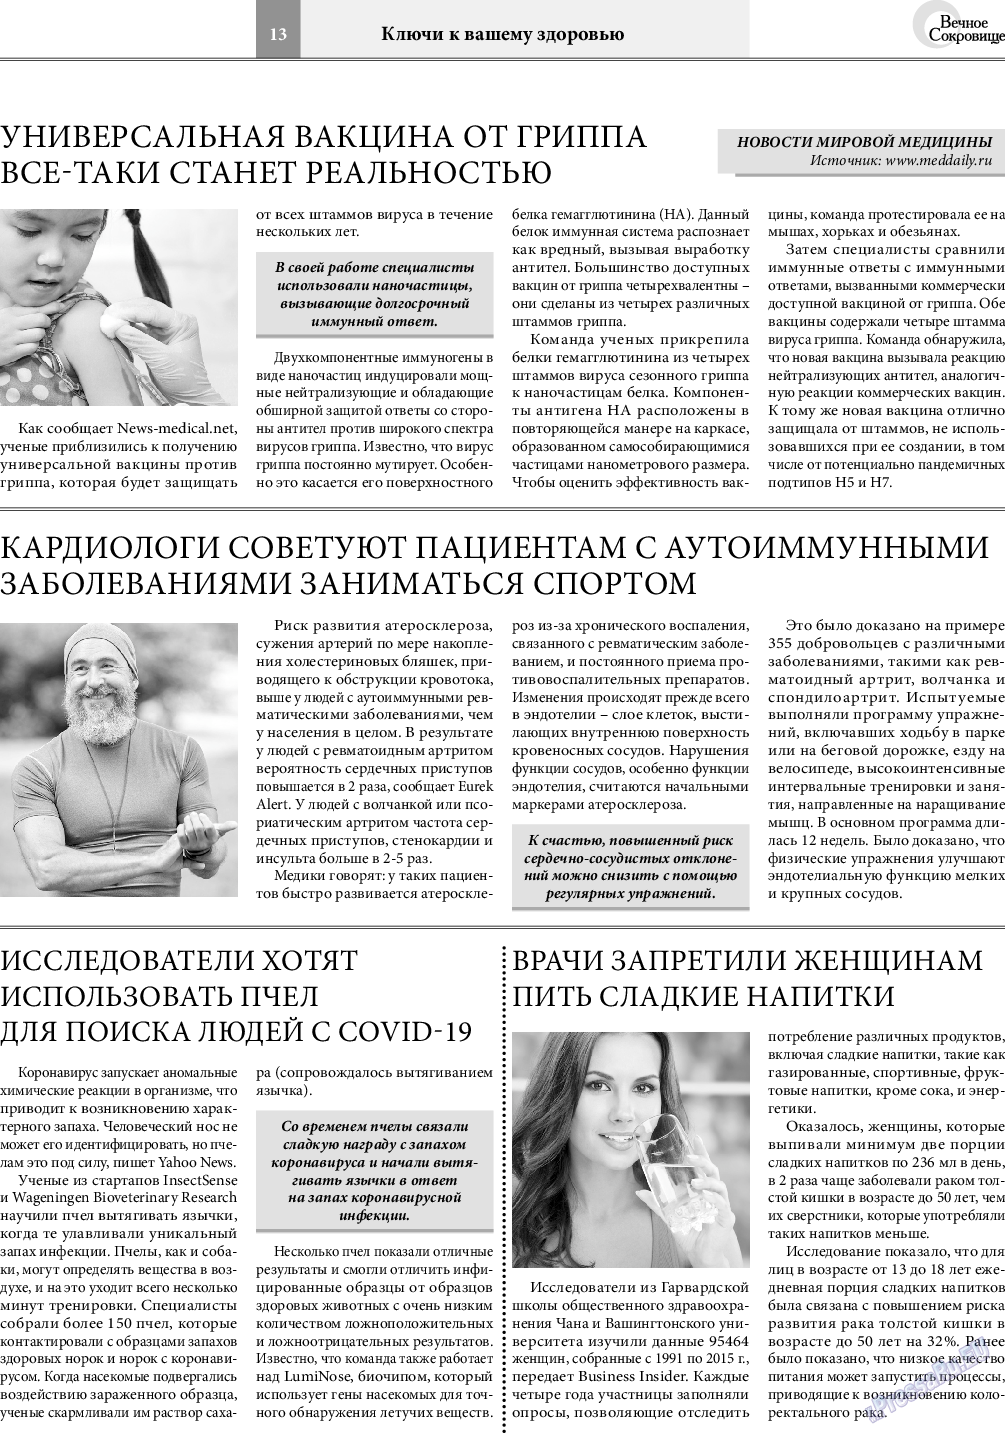 Вечное сокровище, газета. 2021 №3 стр.13